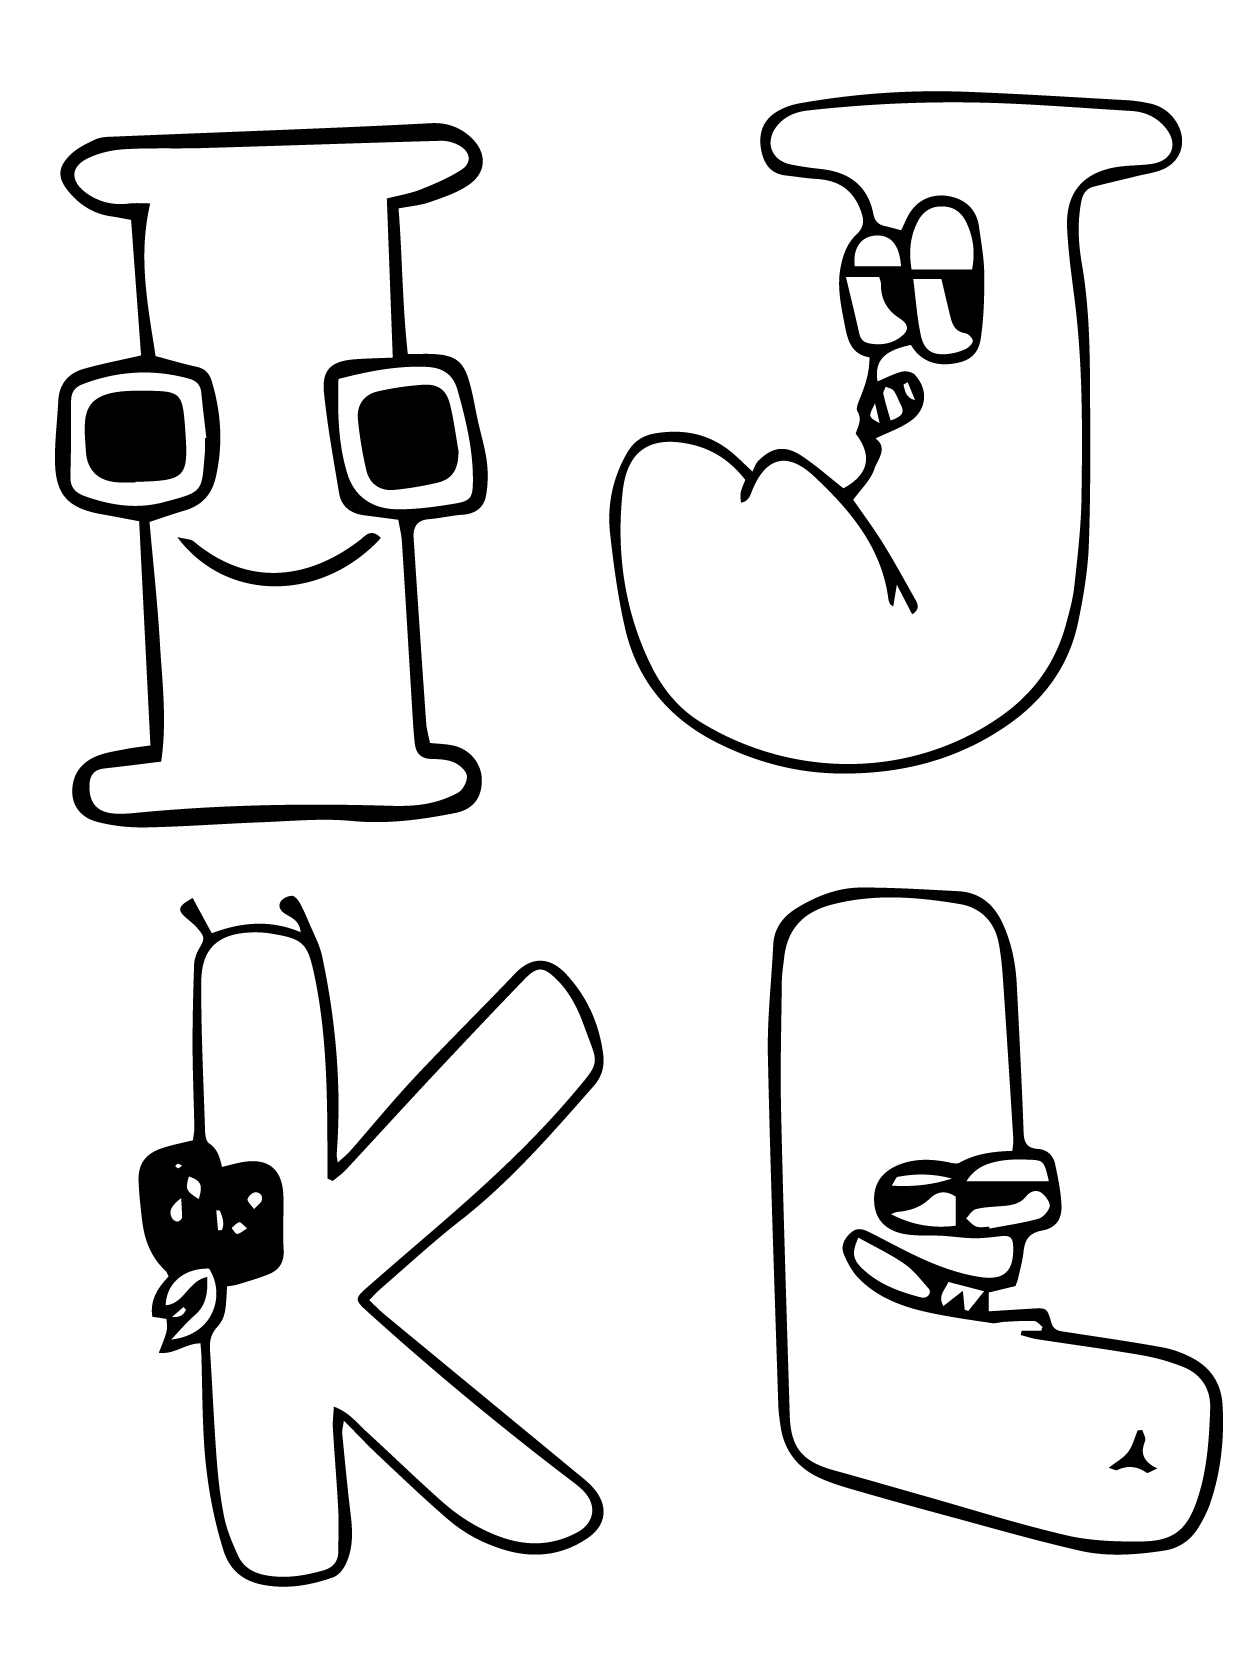 Alfabeto Lore Letra I, J, K y L